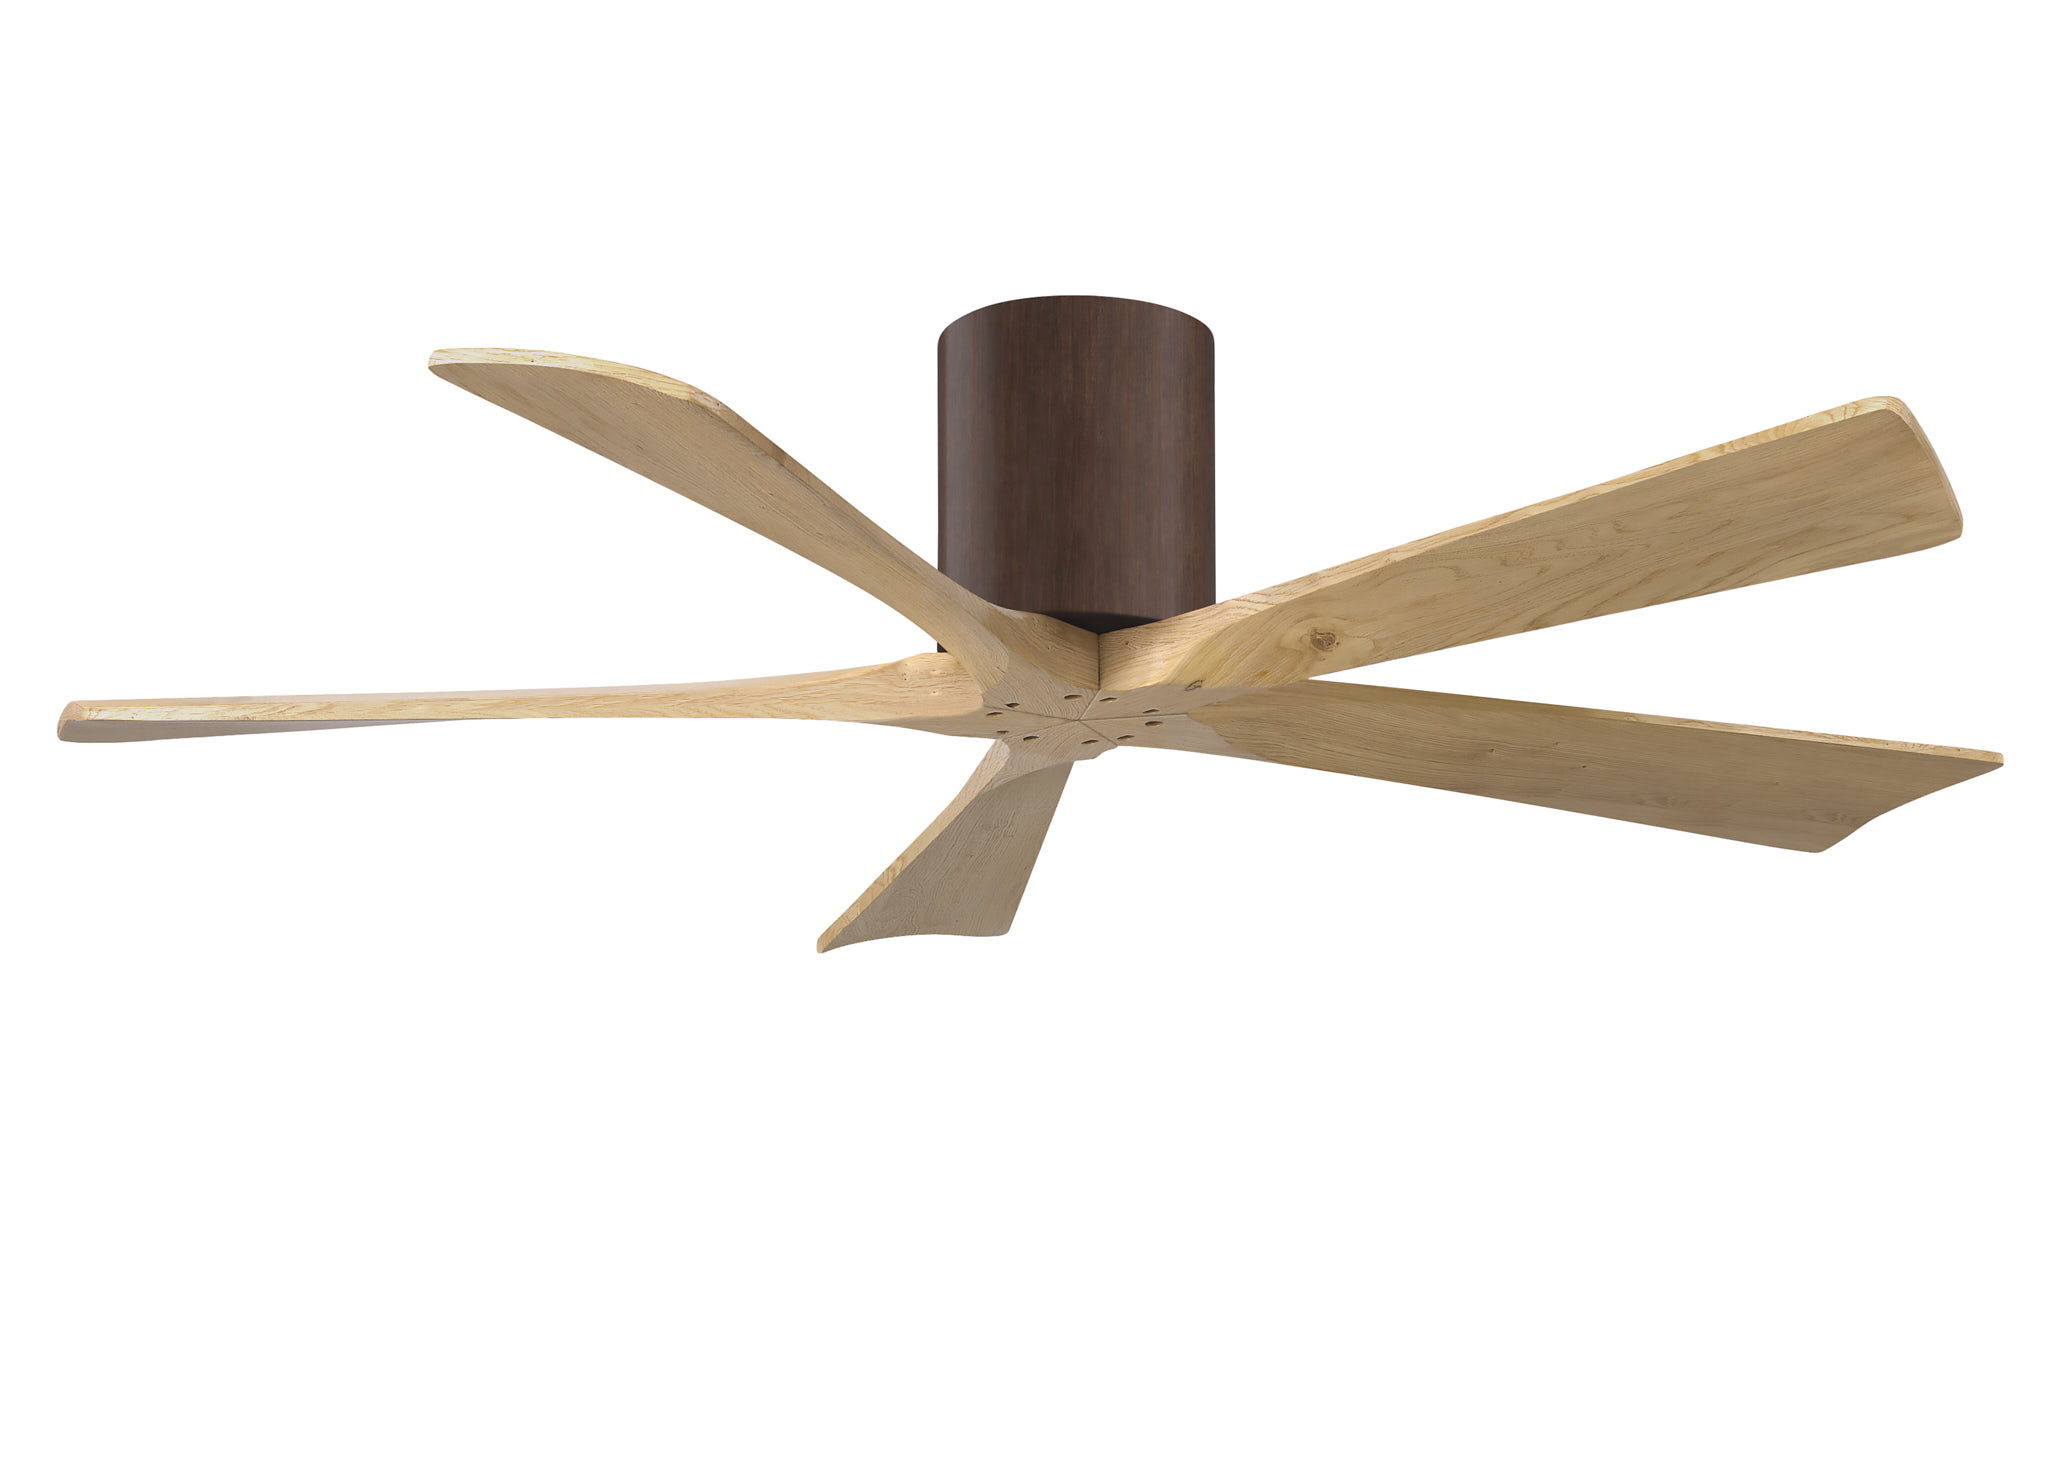 Irene-5H 6-speed ceiling fan in walnut finish with 52